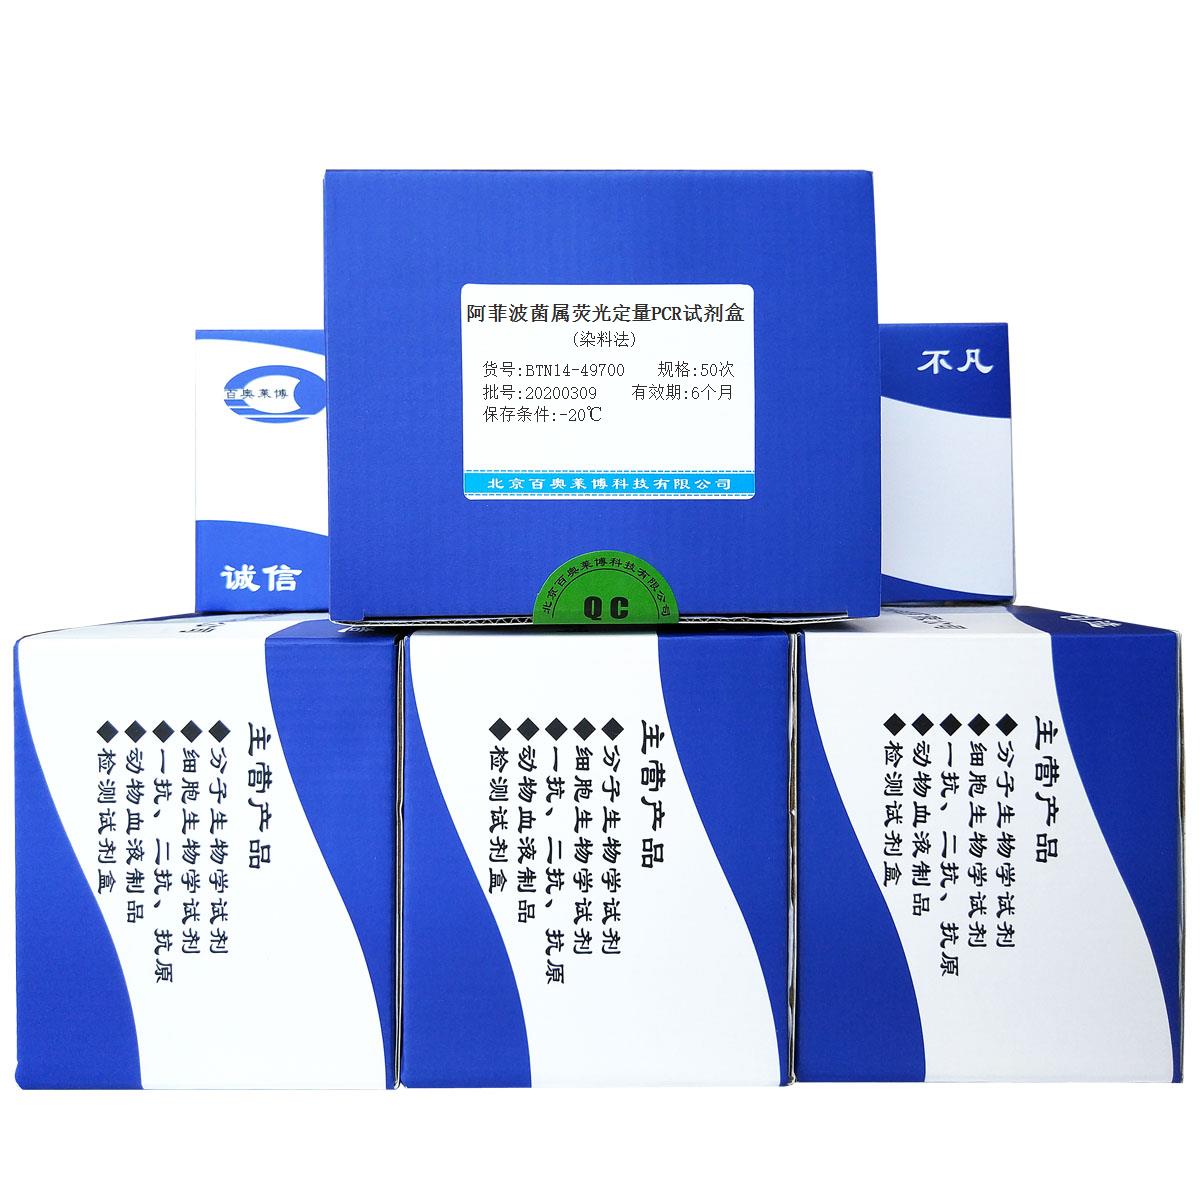 阿菲波菌属荧光定量PCR试剂盒(染料法)